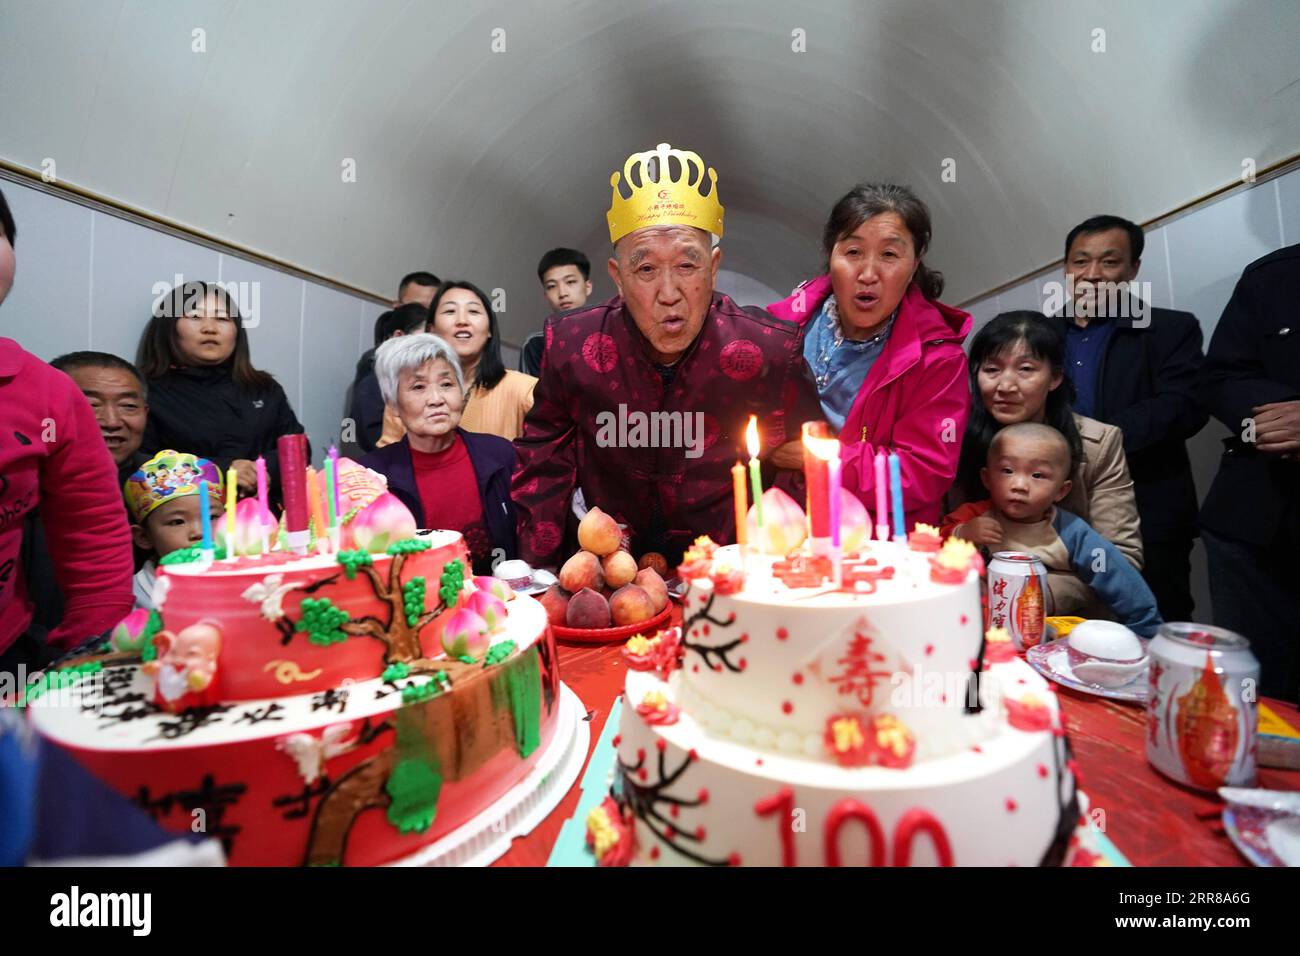 210427 -- TAIYUAN, 27 aprile 2021 -- Hu Zaizhong soffia candele sulla sua torta di compleanno al suo banchetto di compleanno al villaggio di Xuejiawan, contea di Liulin, città di Lyuliang nella provincia dello Shanxi della Cina settentrionale, il 24 aprile 2021. HU Zaizhong, che ha appena compiuto 100 anni, ricorda vividamente i suoi desideri in diverse fasi della sua vita: Avere cibo e vestiti decenti nei suoi primi giorni, insegnare quanti più allievi possibile nella sua età adulta, e godersi del tempo di qualità con la sua famiglia per gli ultimi anni. Tuttavia, Hu ha fatto un nuovo desiderio prima di soffiare le candele sulla sua torta di compleanno. Tutti i membri della famiglia allargata di Hu si sono riuniti Foto Stock